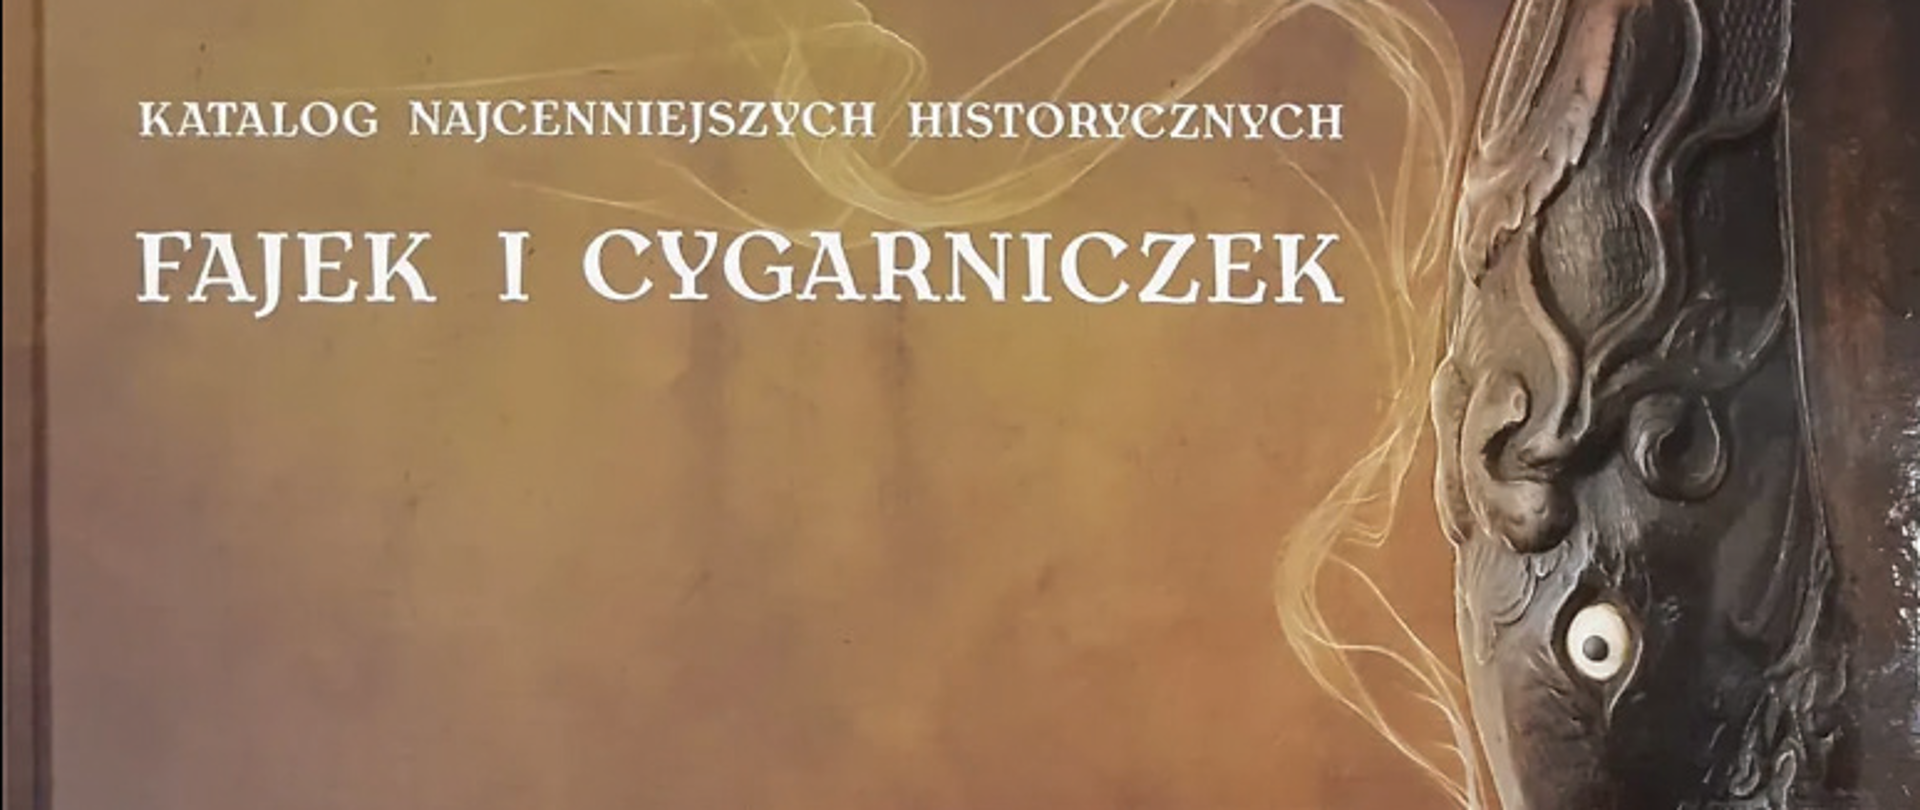 Katalog najcenniejszych historycznych fajek i cygarniczek